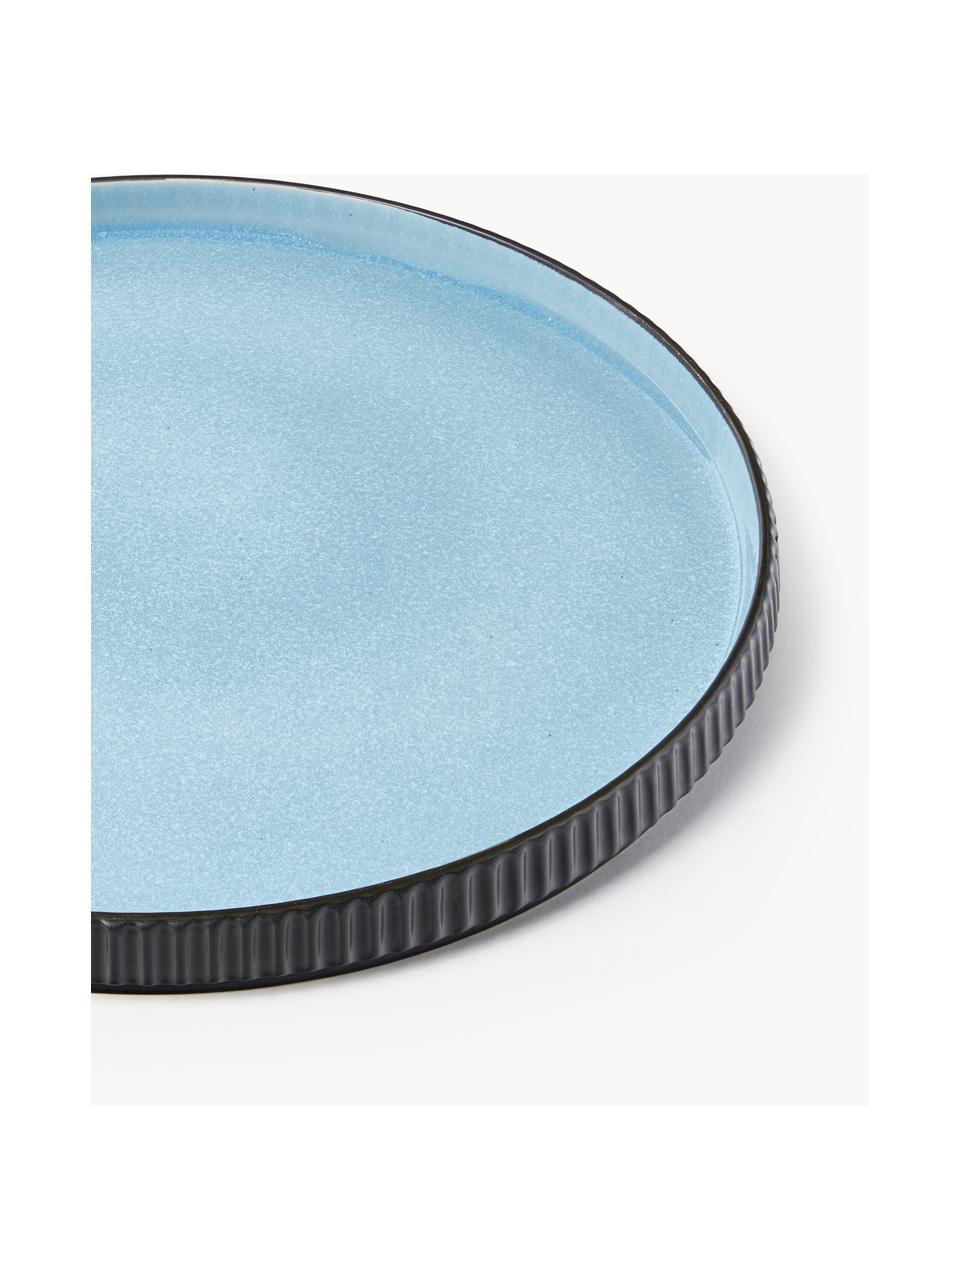 Assiettes plates Bora, 4 pièces, Grès, émaillé, Bleu ciel, noir, Ø 27 cm